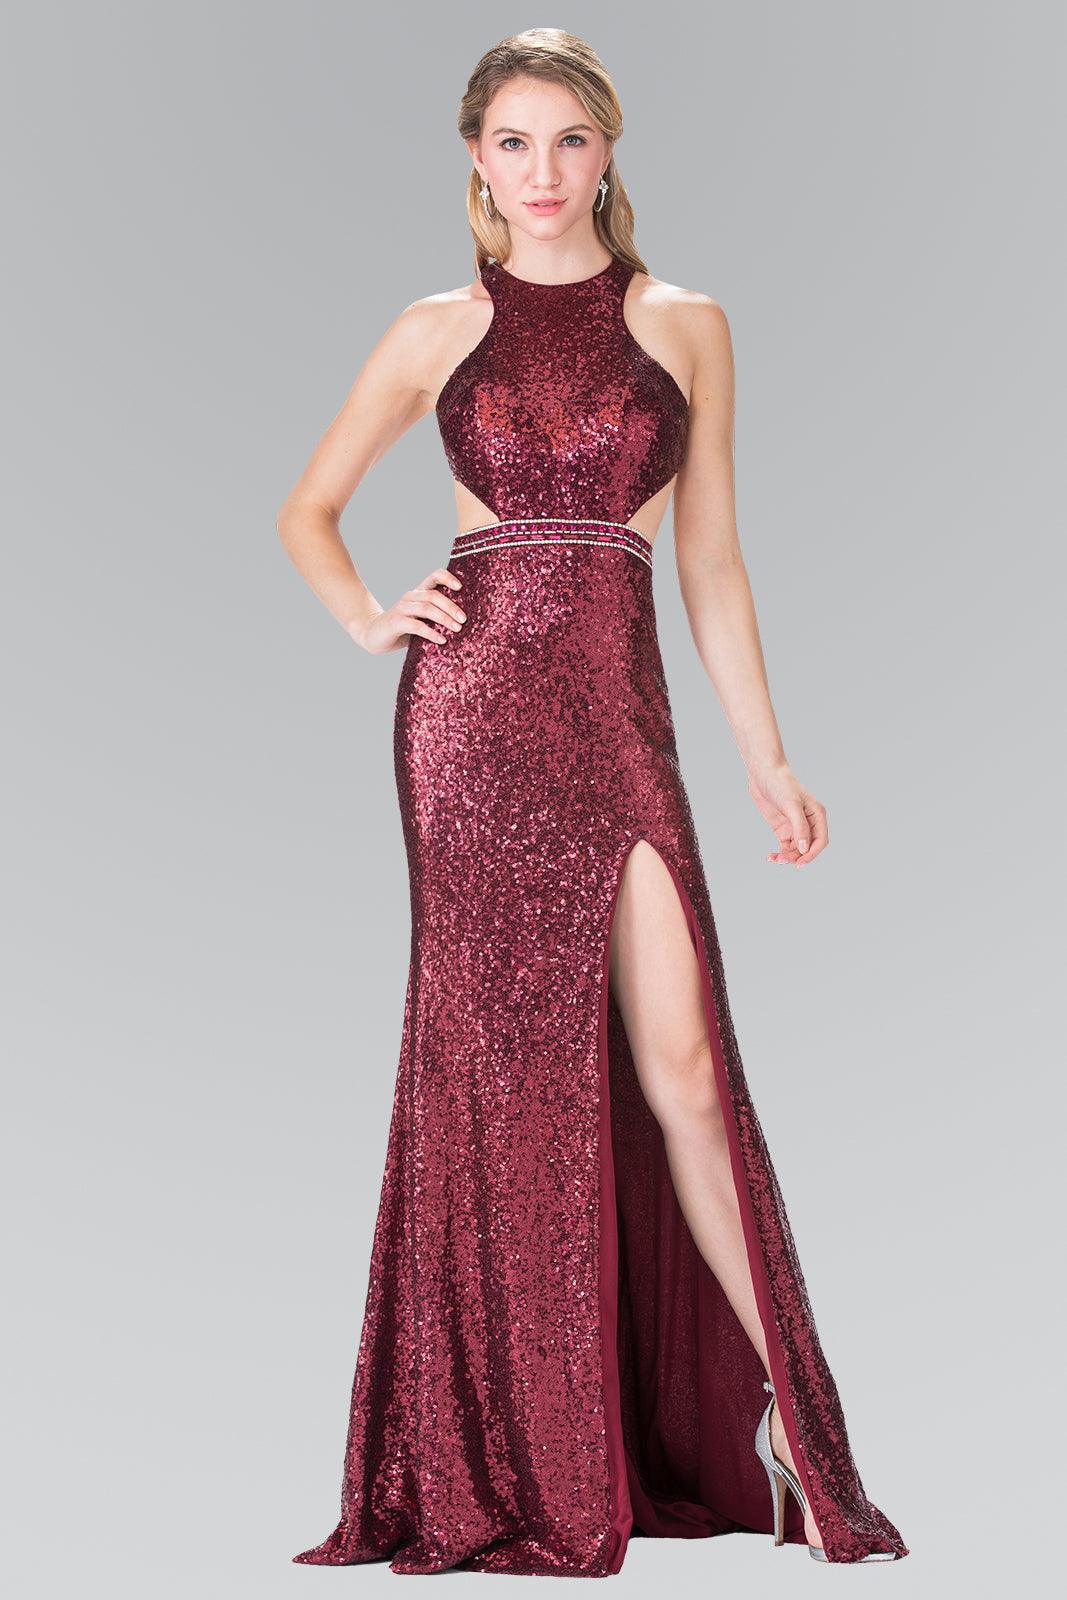 Prom Formal Halter Long Dress with Side Slit | DressOutlet for $250.99 ...